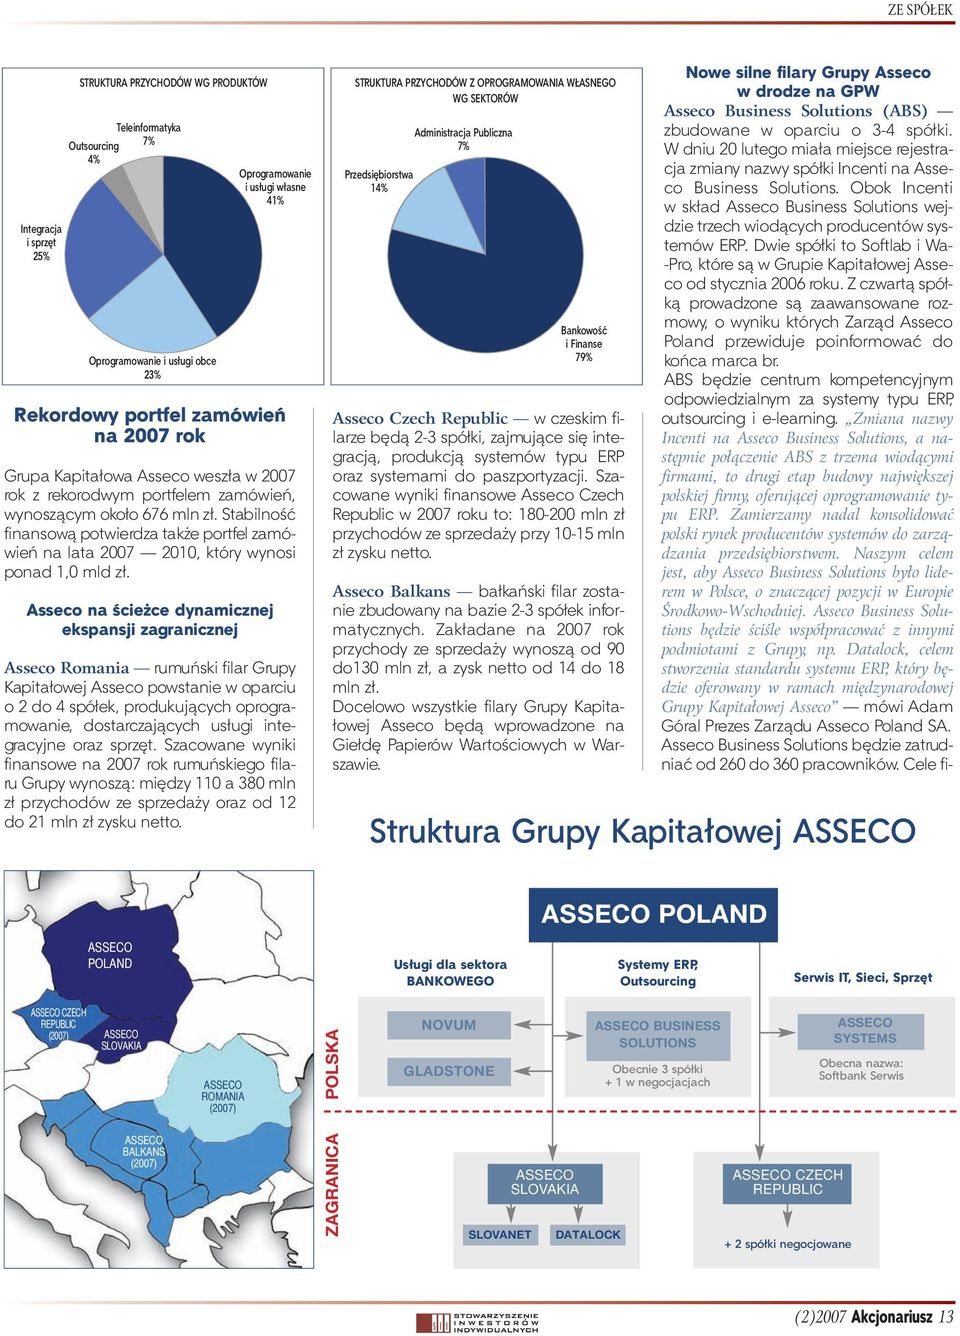 Asseco na ścieżce dynamicznej ekspansji zagranicznej Oprogramowanie i usługi własne 41% Asseco Romania rumuński filar Grupy Kapitałowej Asseco powstanie w oparciu o 2 do 4 spółek, produkujących